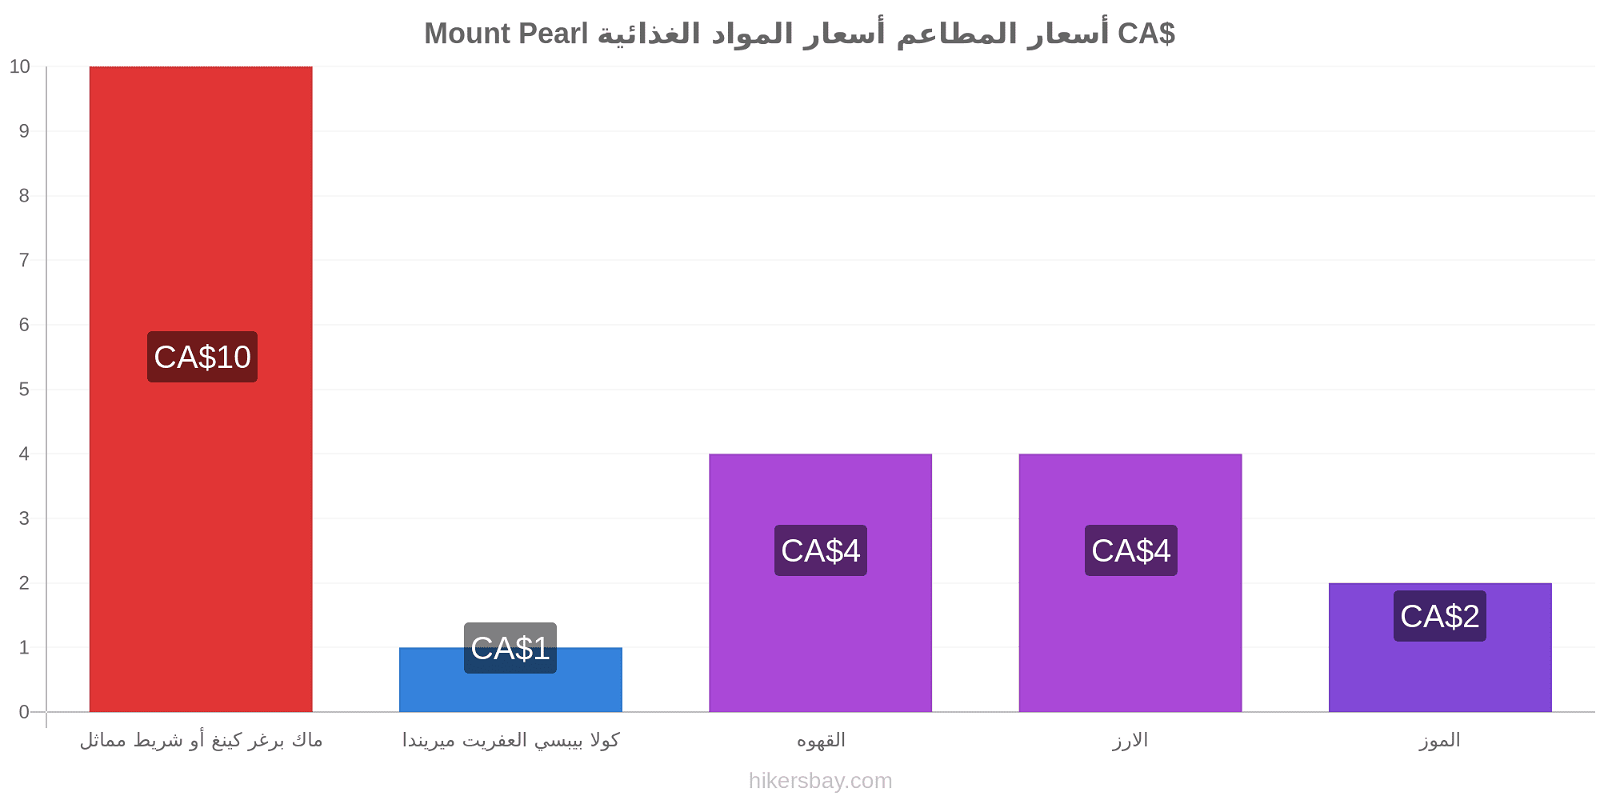 Mount Pearl تغييرات الأسعار hikersbay.com